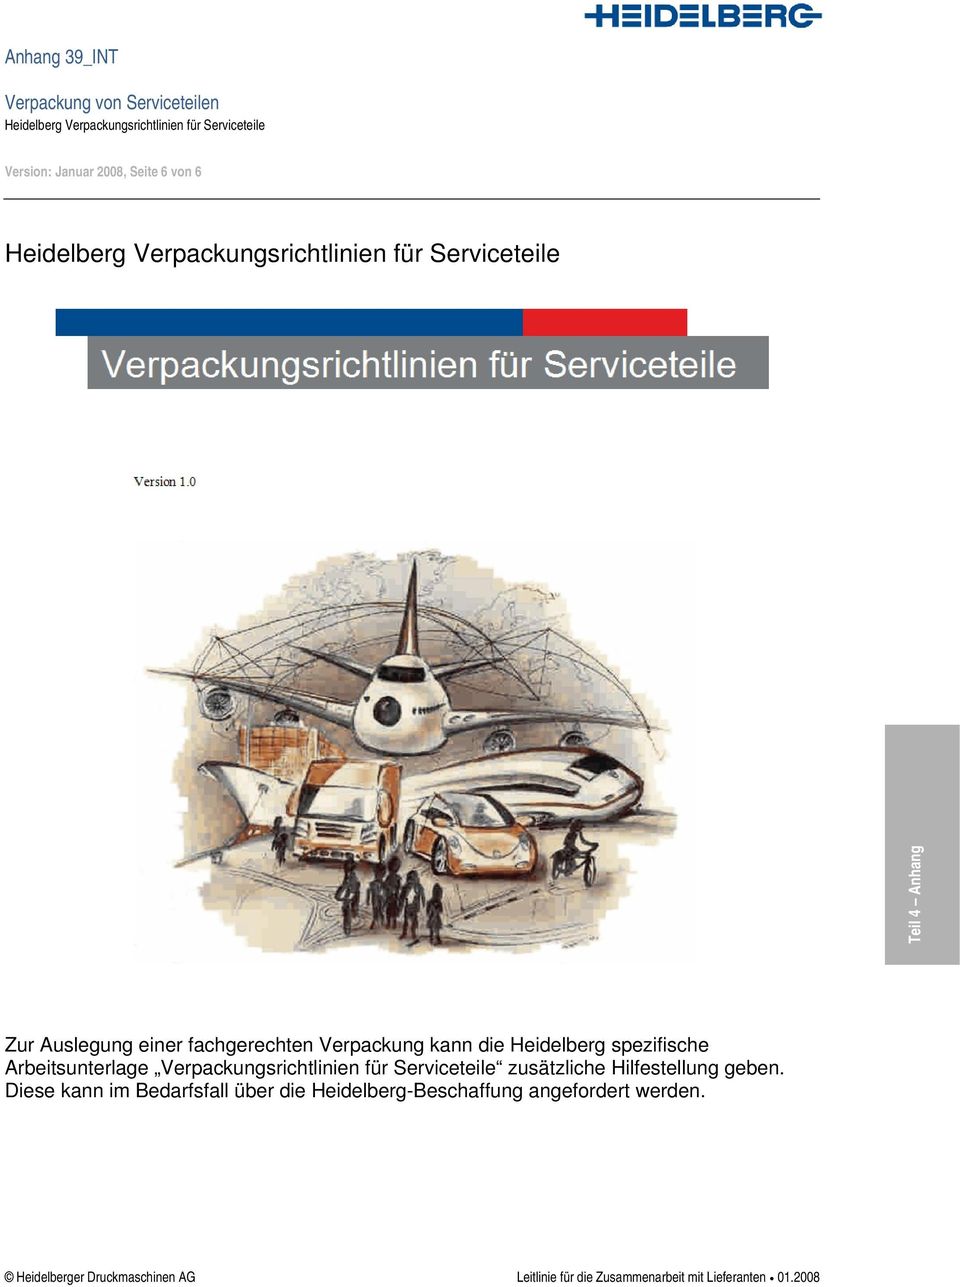 kann die Heidelberg spezifische Arbeitsunterlage Verpackungsrichtlinien für Serviceteile